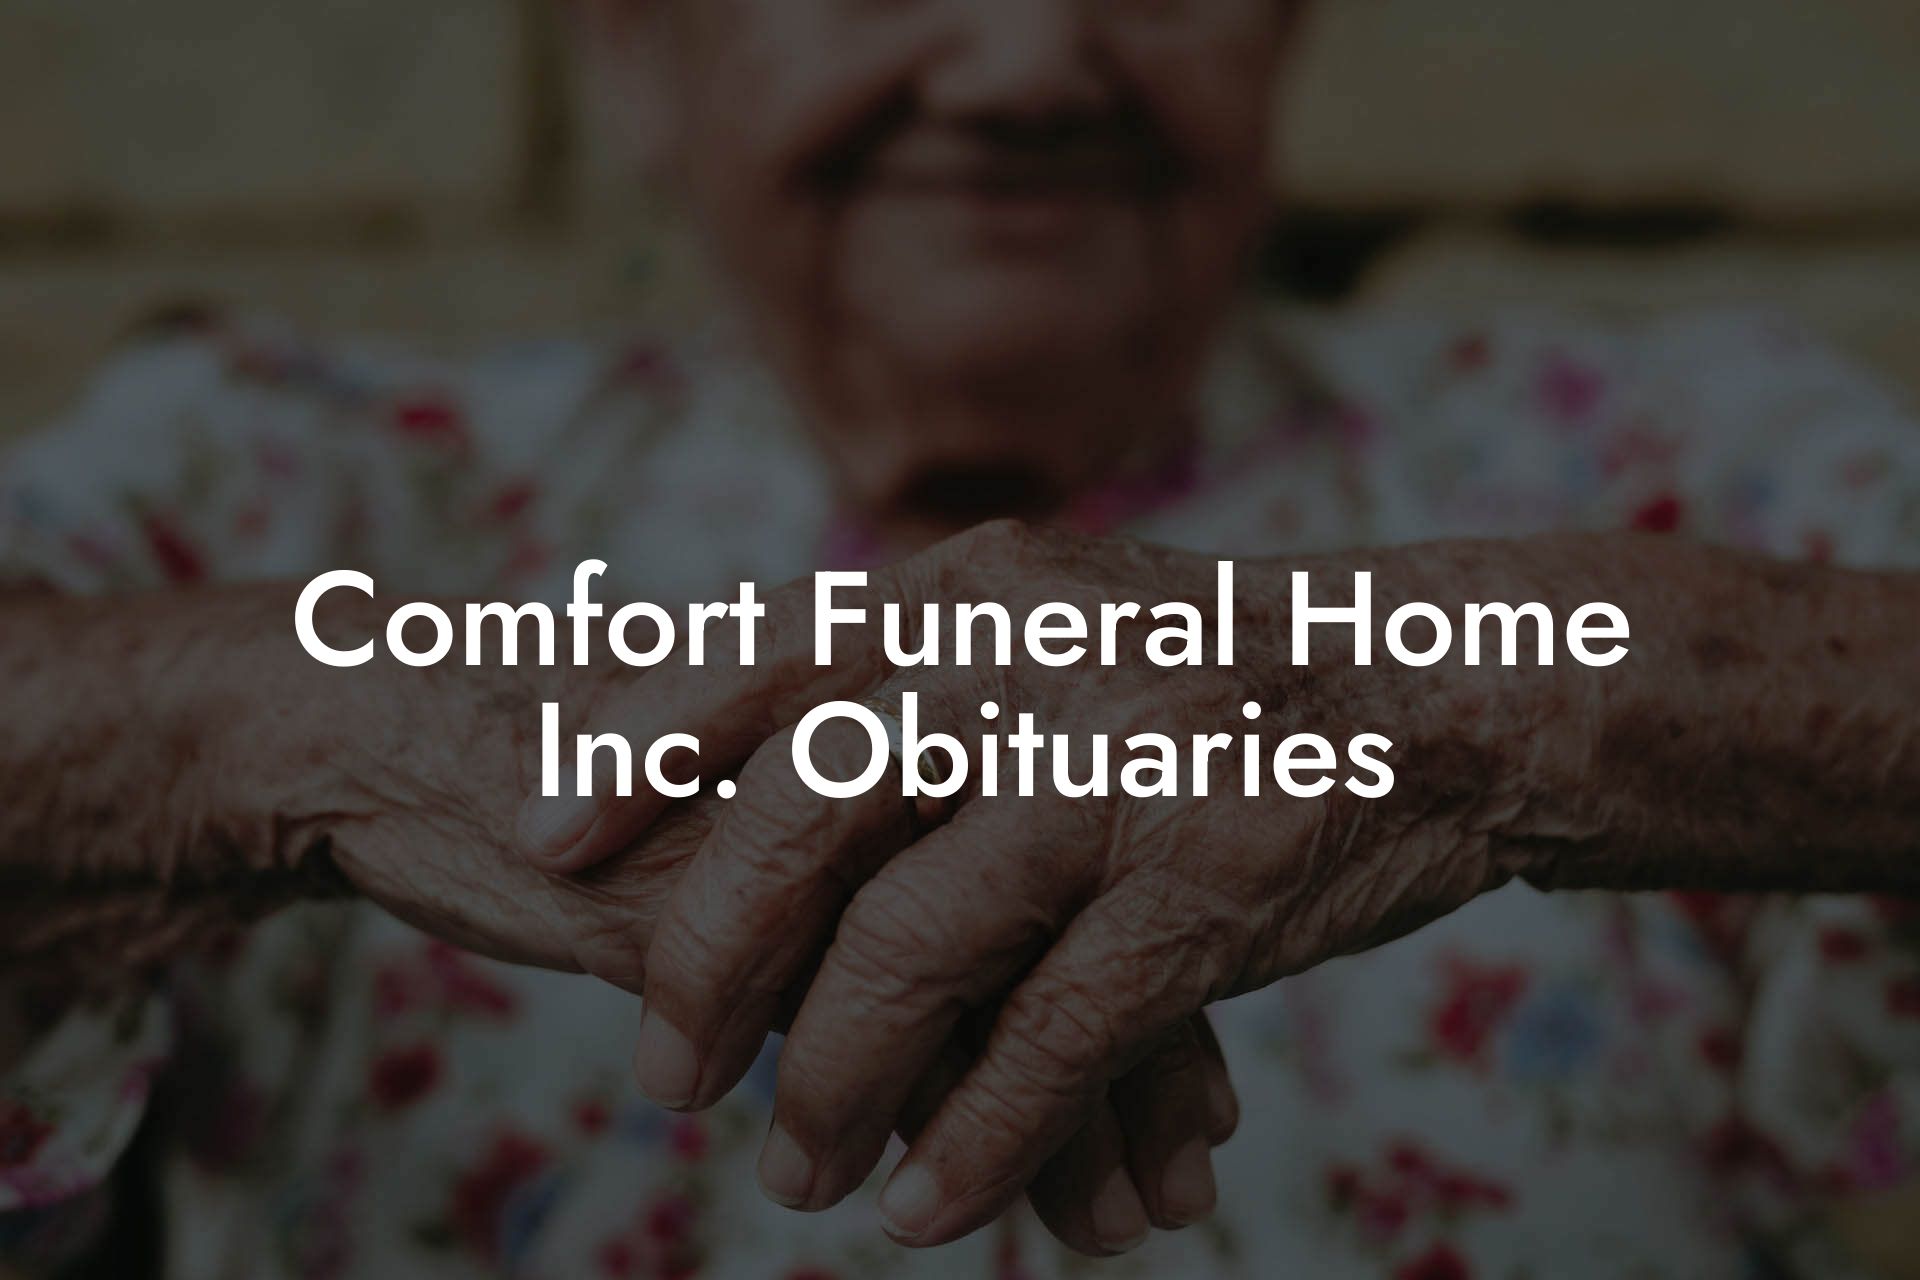 Comfort Funeral Home Inc. Obituaries